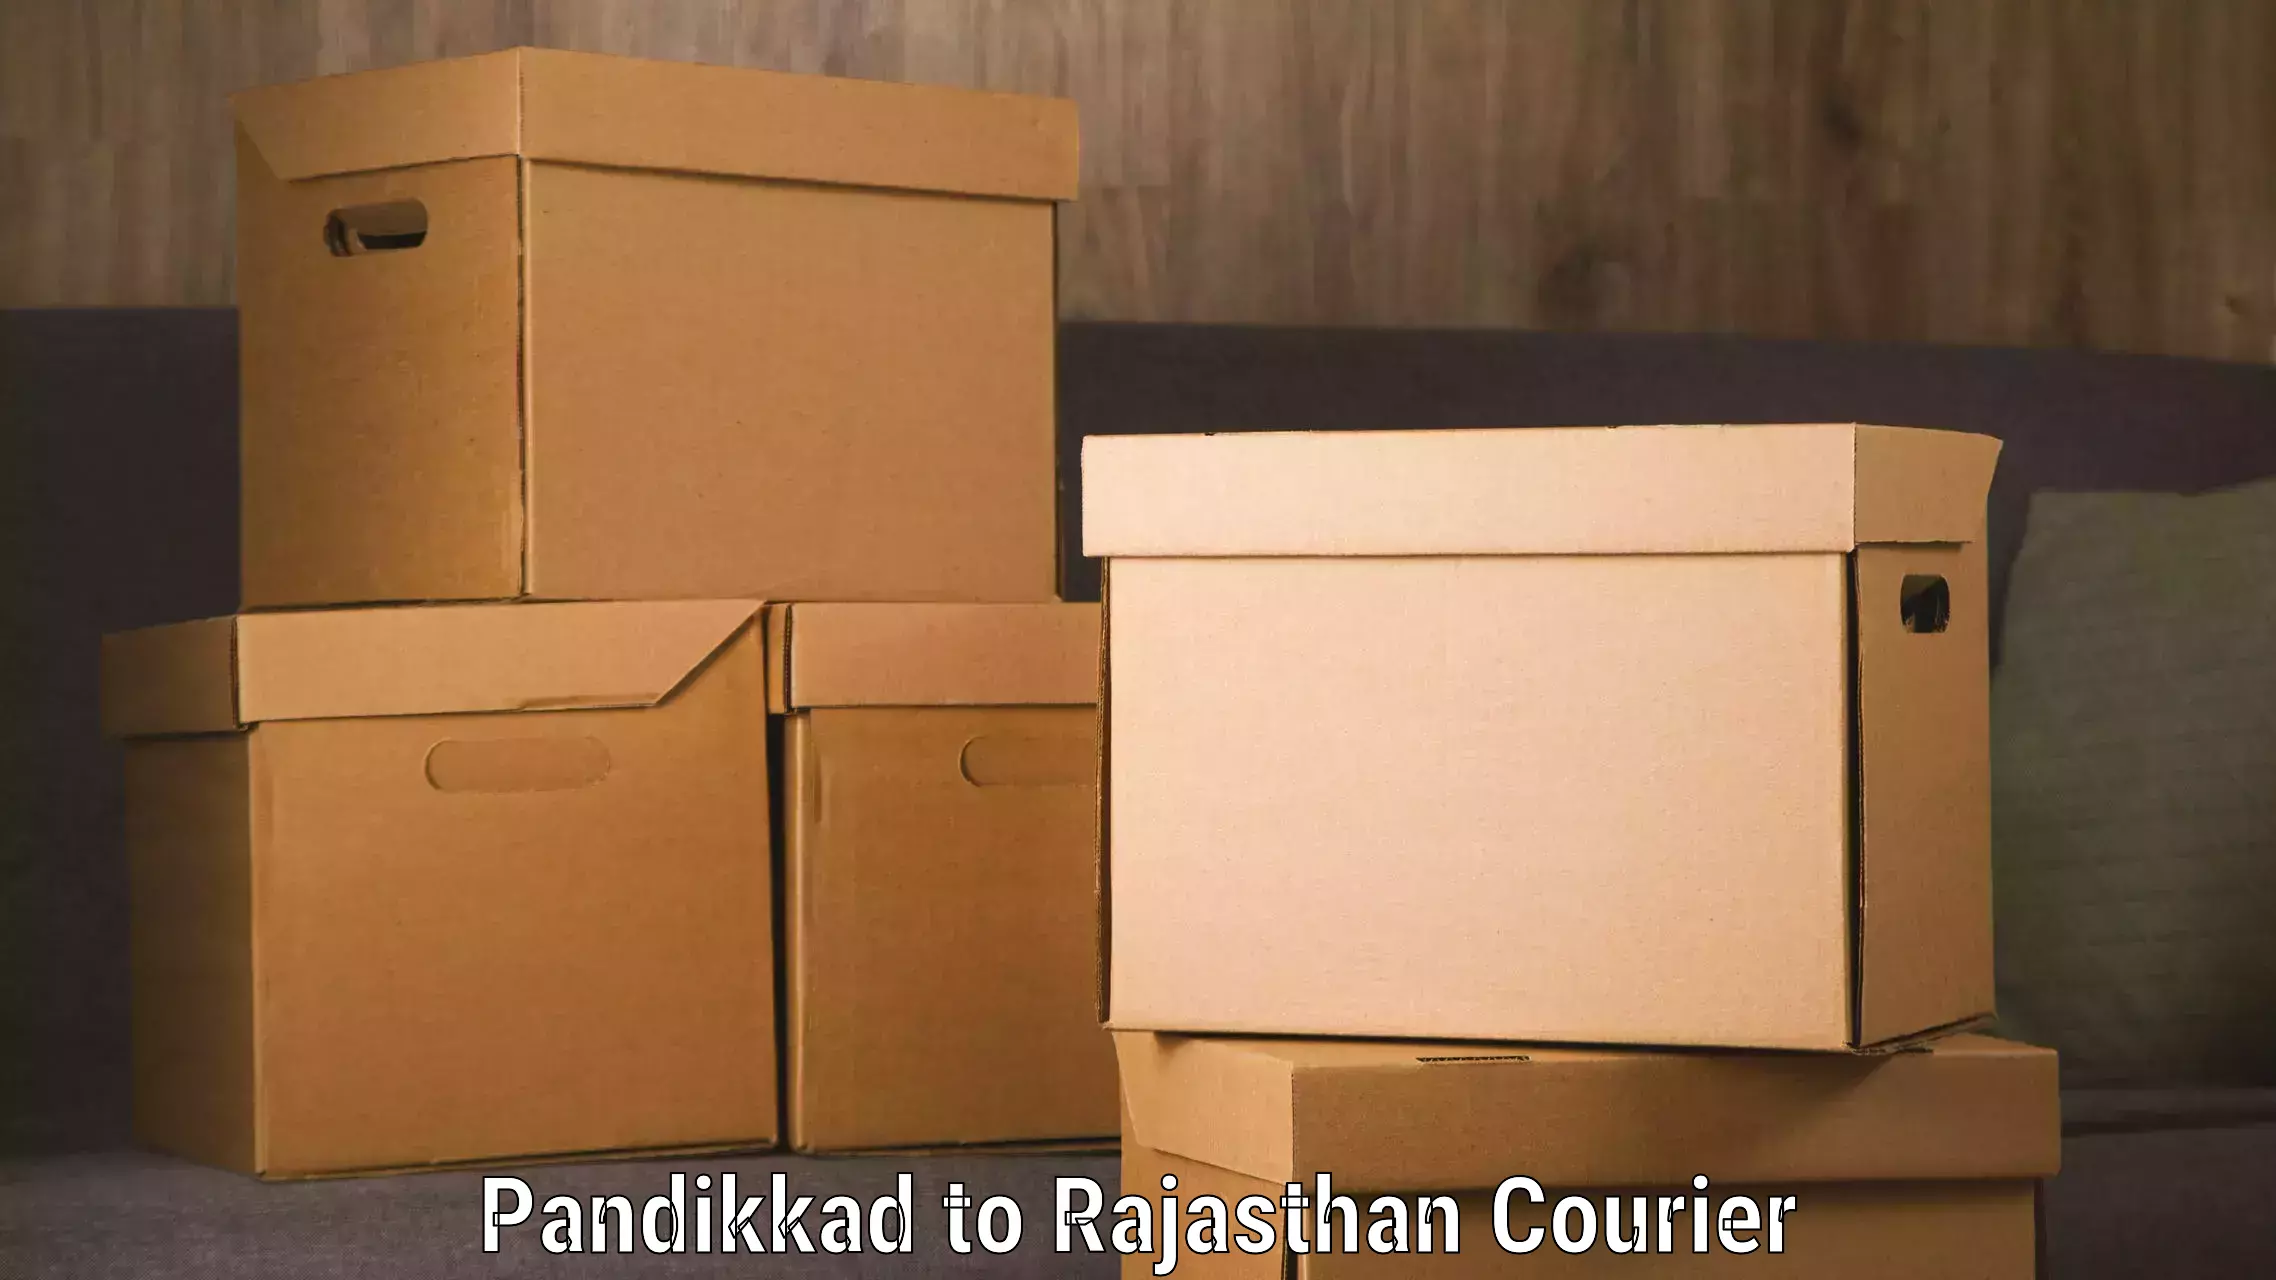 Reliable shipping partners Pandikkad to IIIT Kota